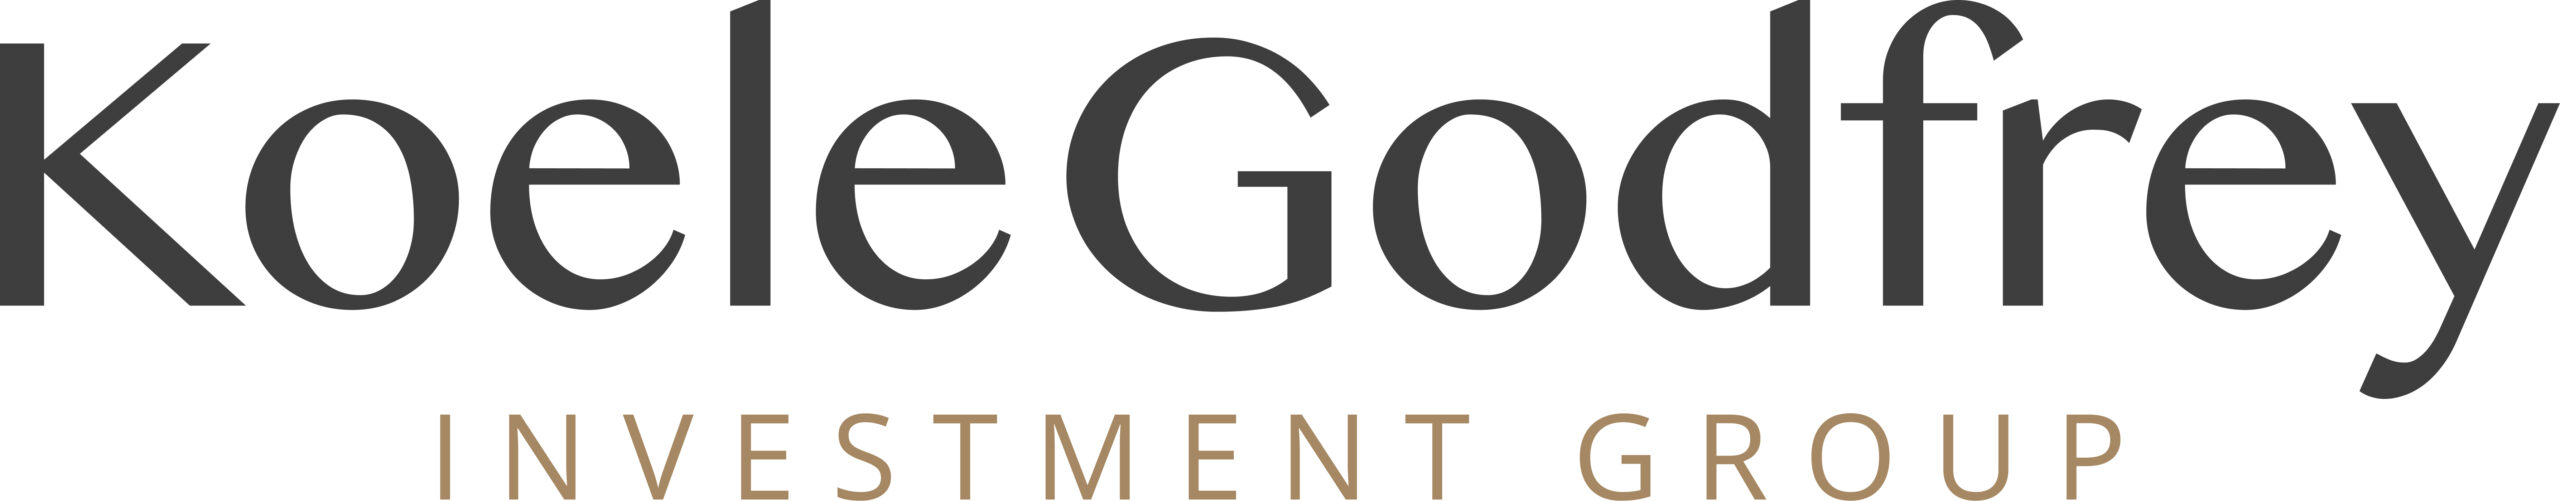 KoeleGodfrey Investment logo